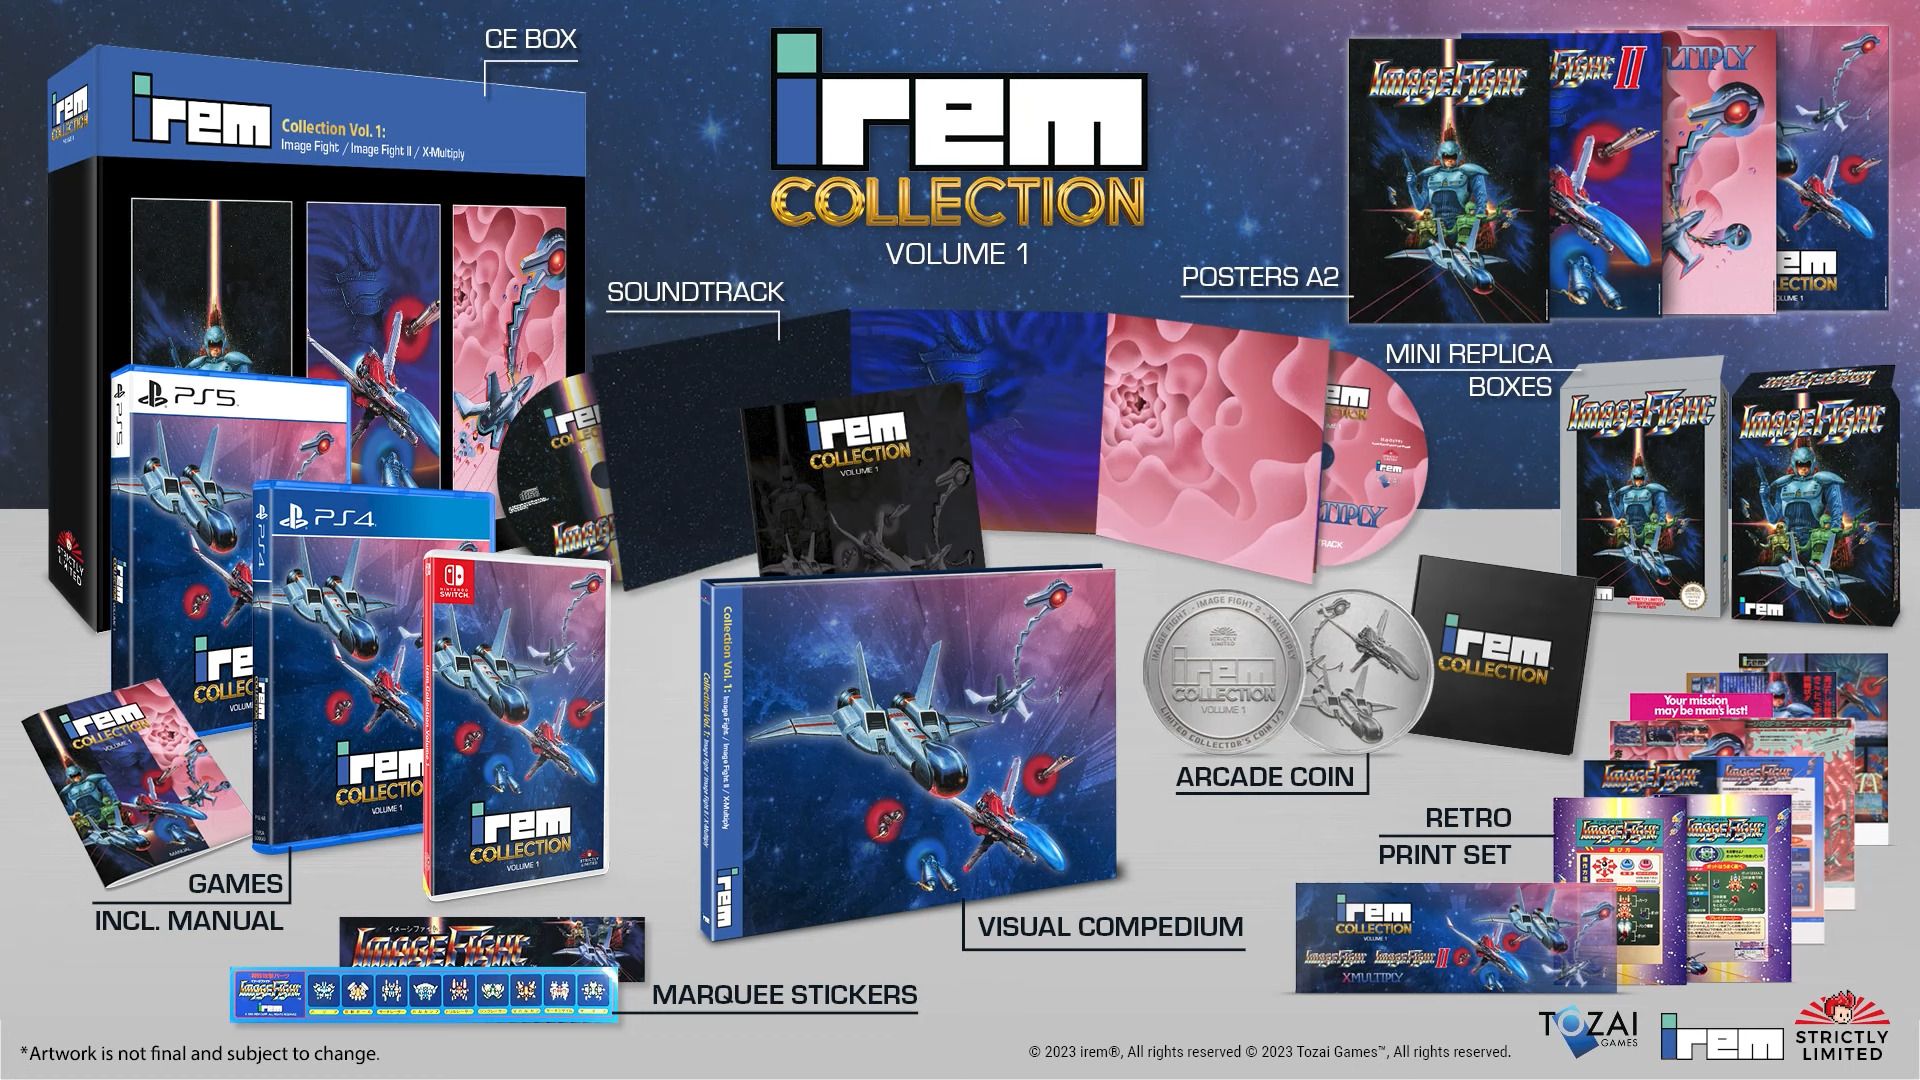 #Irem Collection legt Action-Klassiker neu auf und diese Games machen in Vol. 1 den Anfang